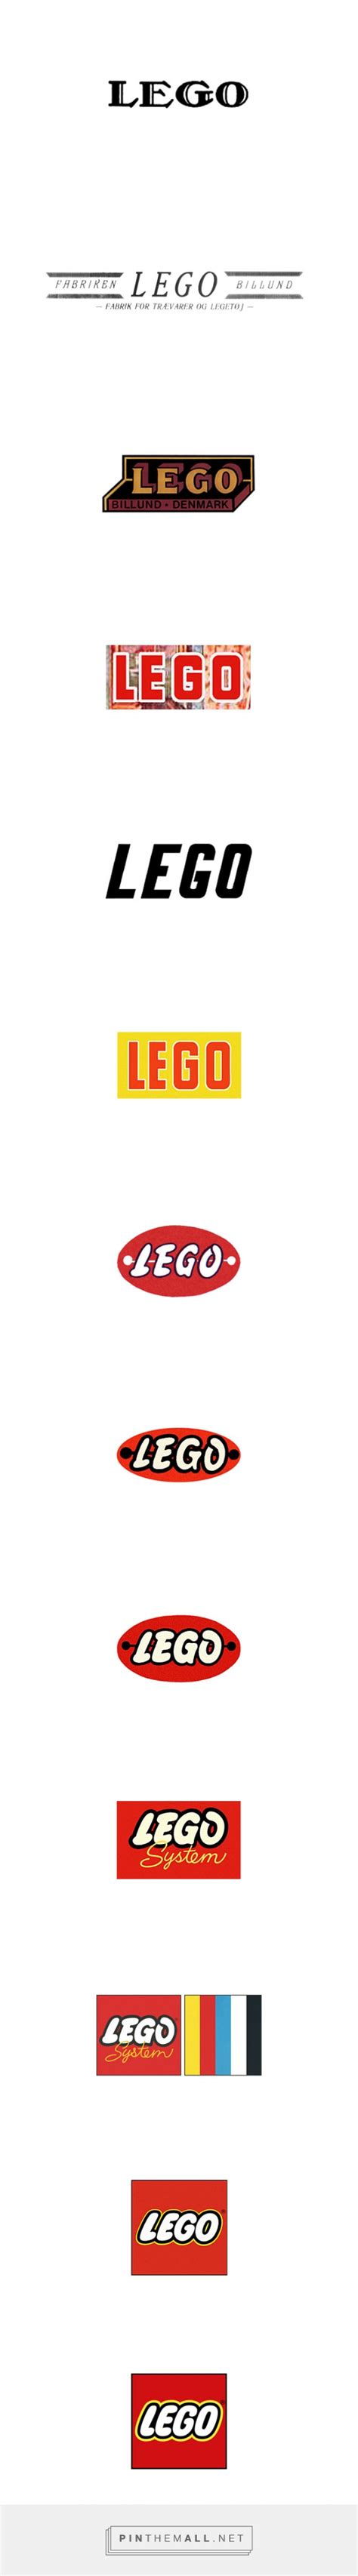 Evolution Of The Lego Logo Logo Design Love A